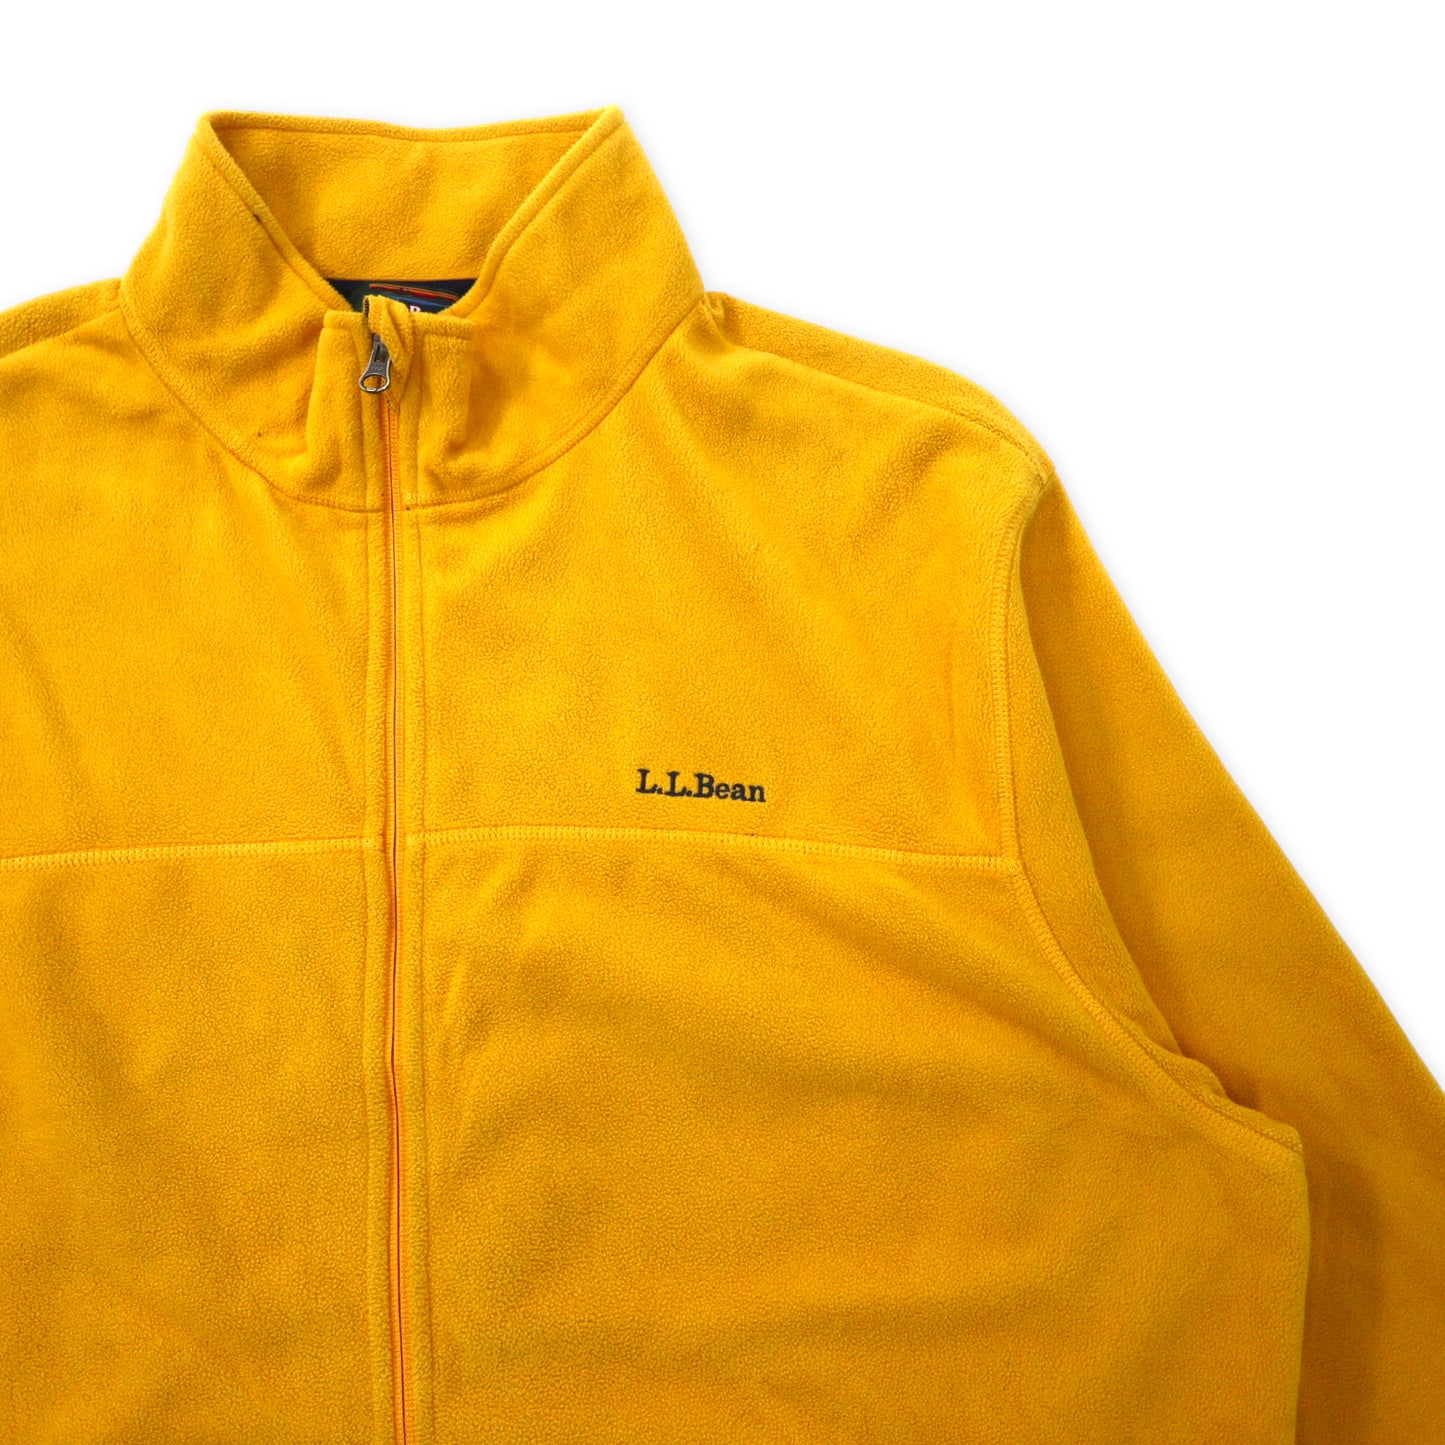 L.L.Bean Full Zip FLEECE Jacket XL Yellow Polyester Polartec One